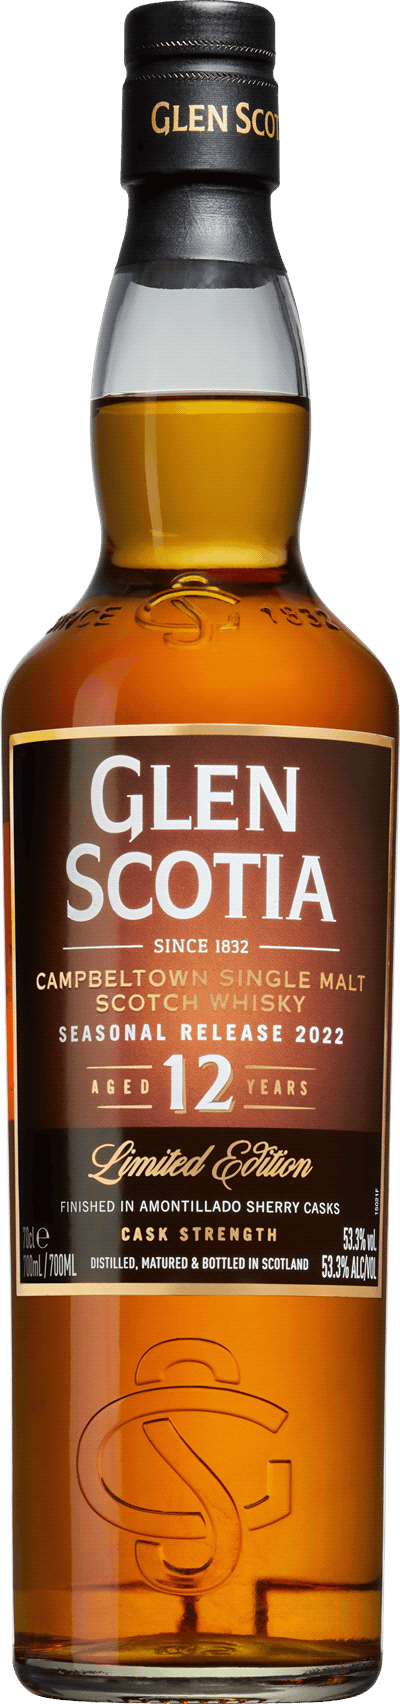 Glen Scotia Seasonal Release 2022